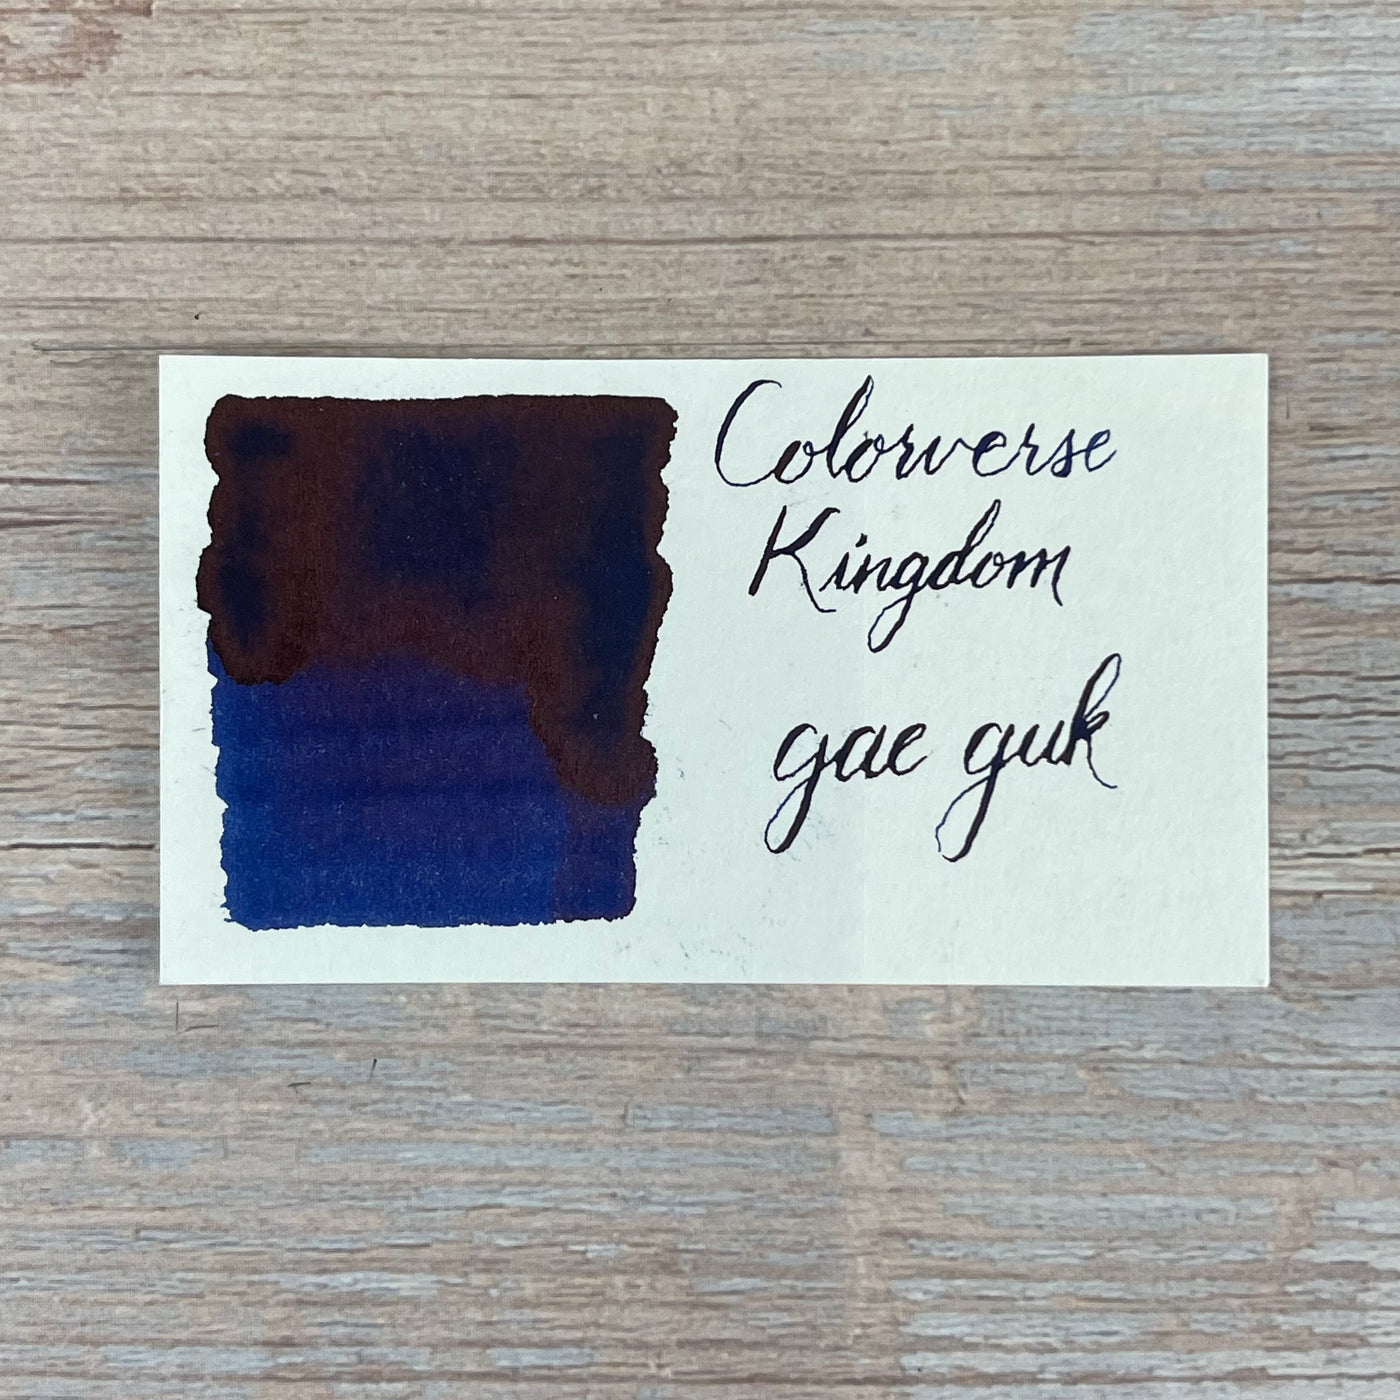 Colorverse Kingdom Project Series gae guk - 30ml Bottled Ink